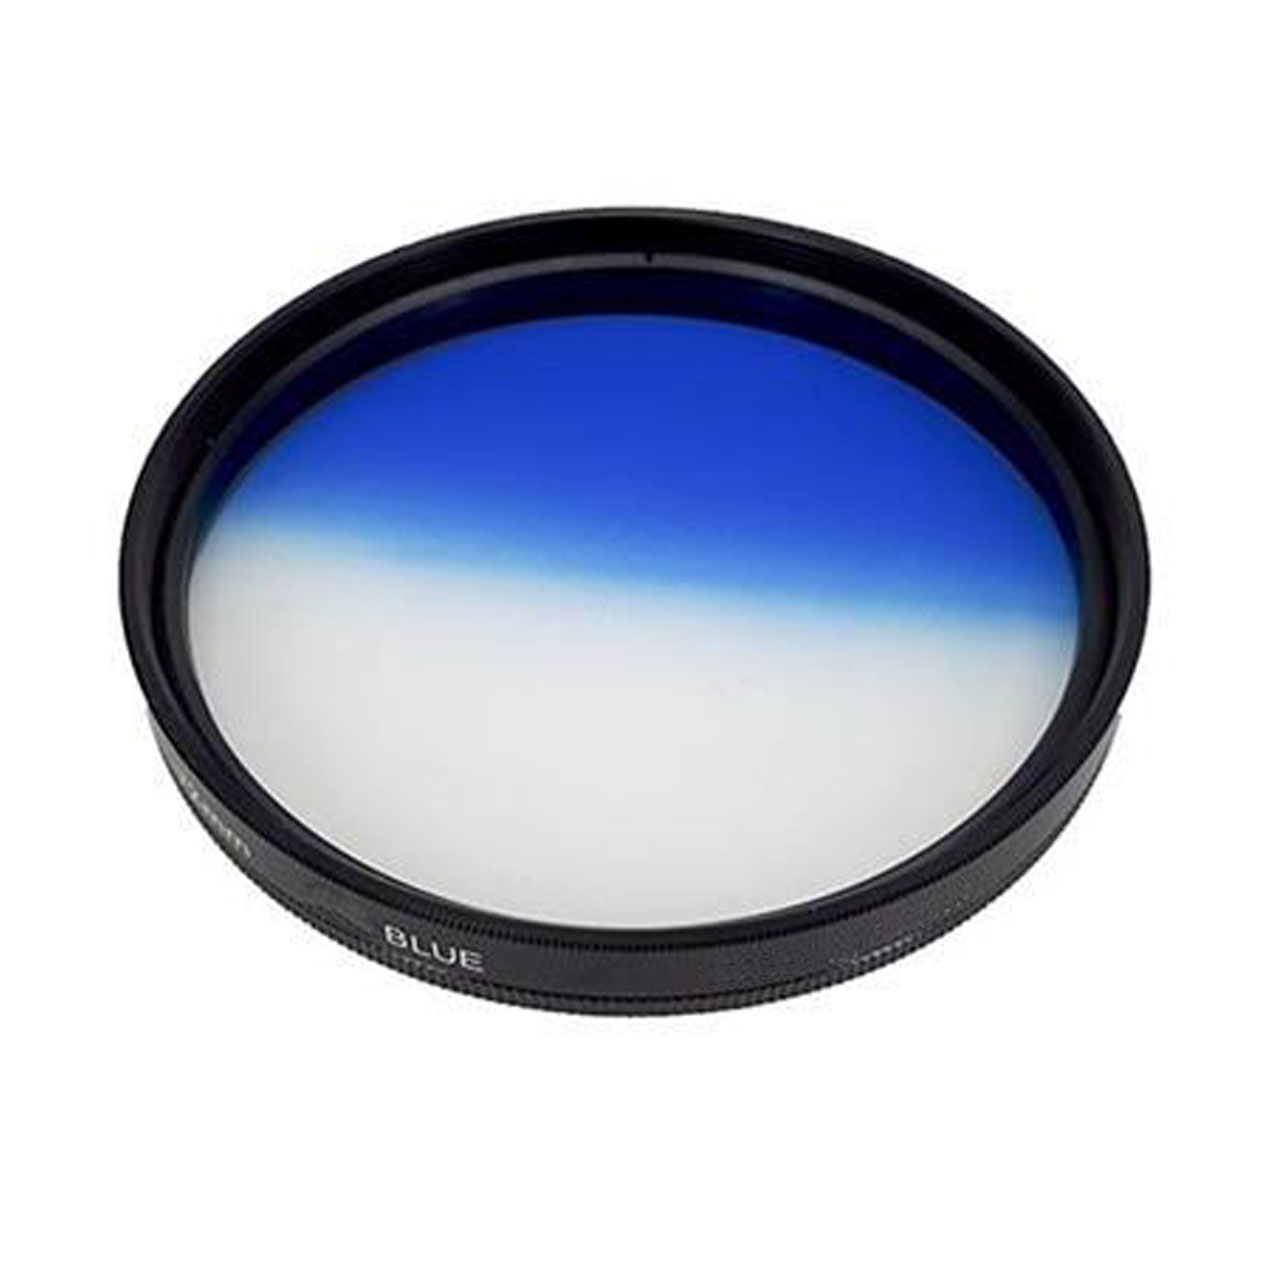 فیلتر لنز کی اند اف مدل HMC UV C SERIES 40.5mm